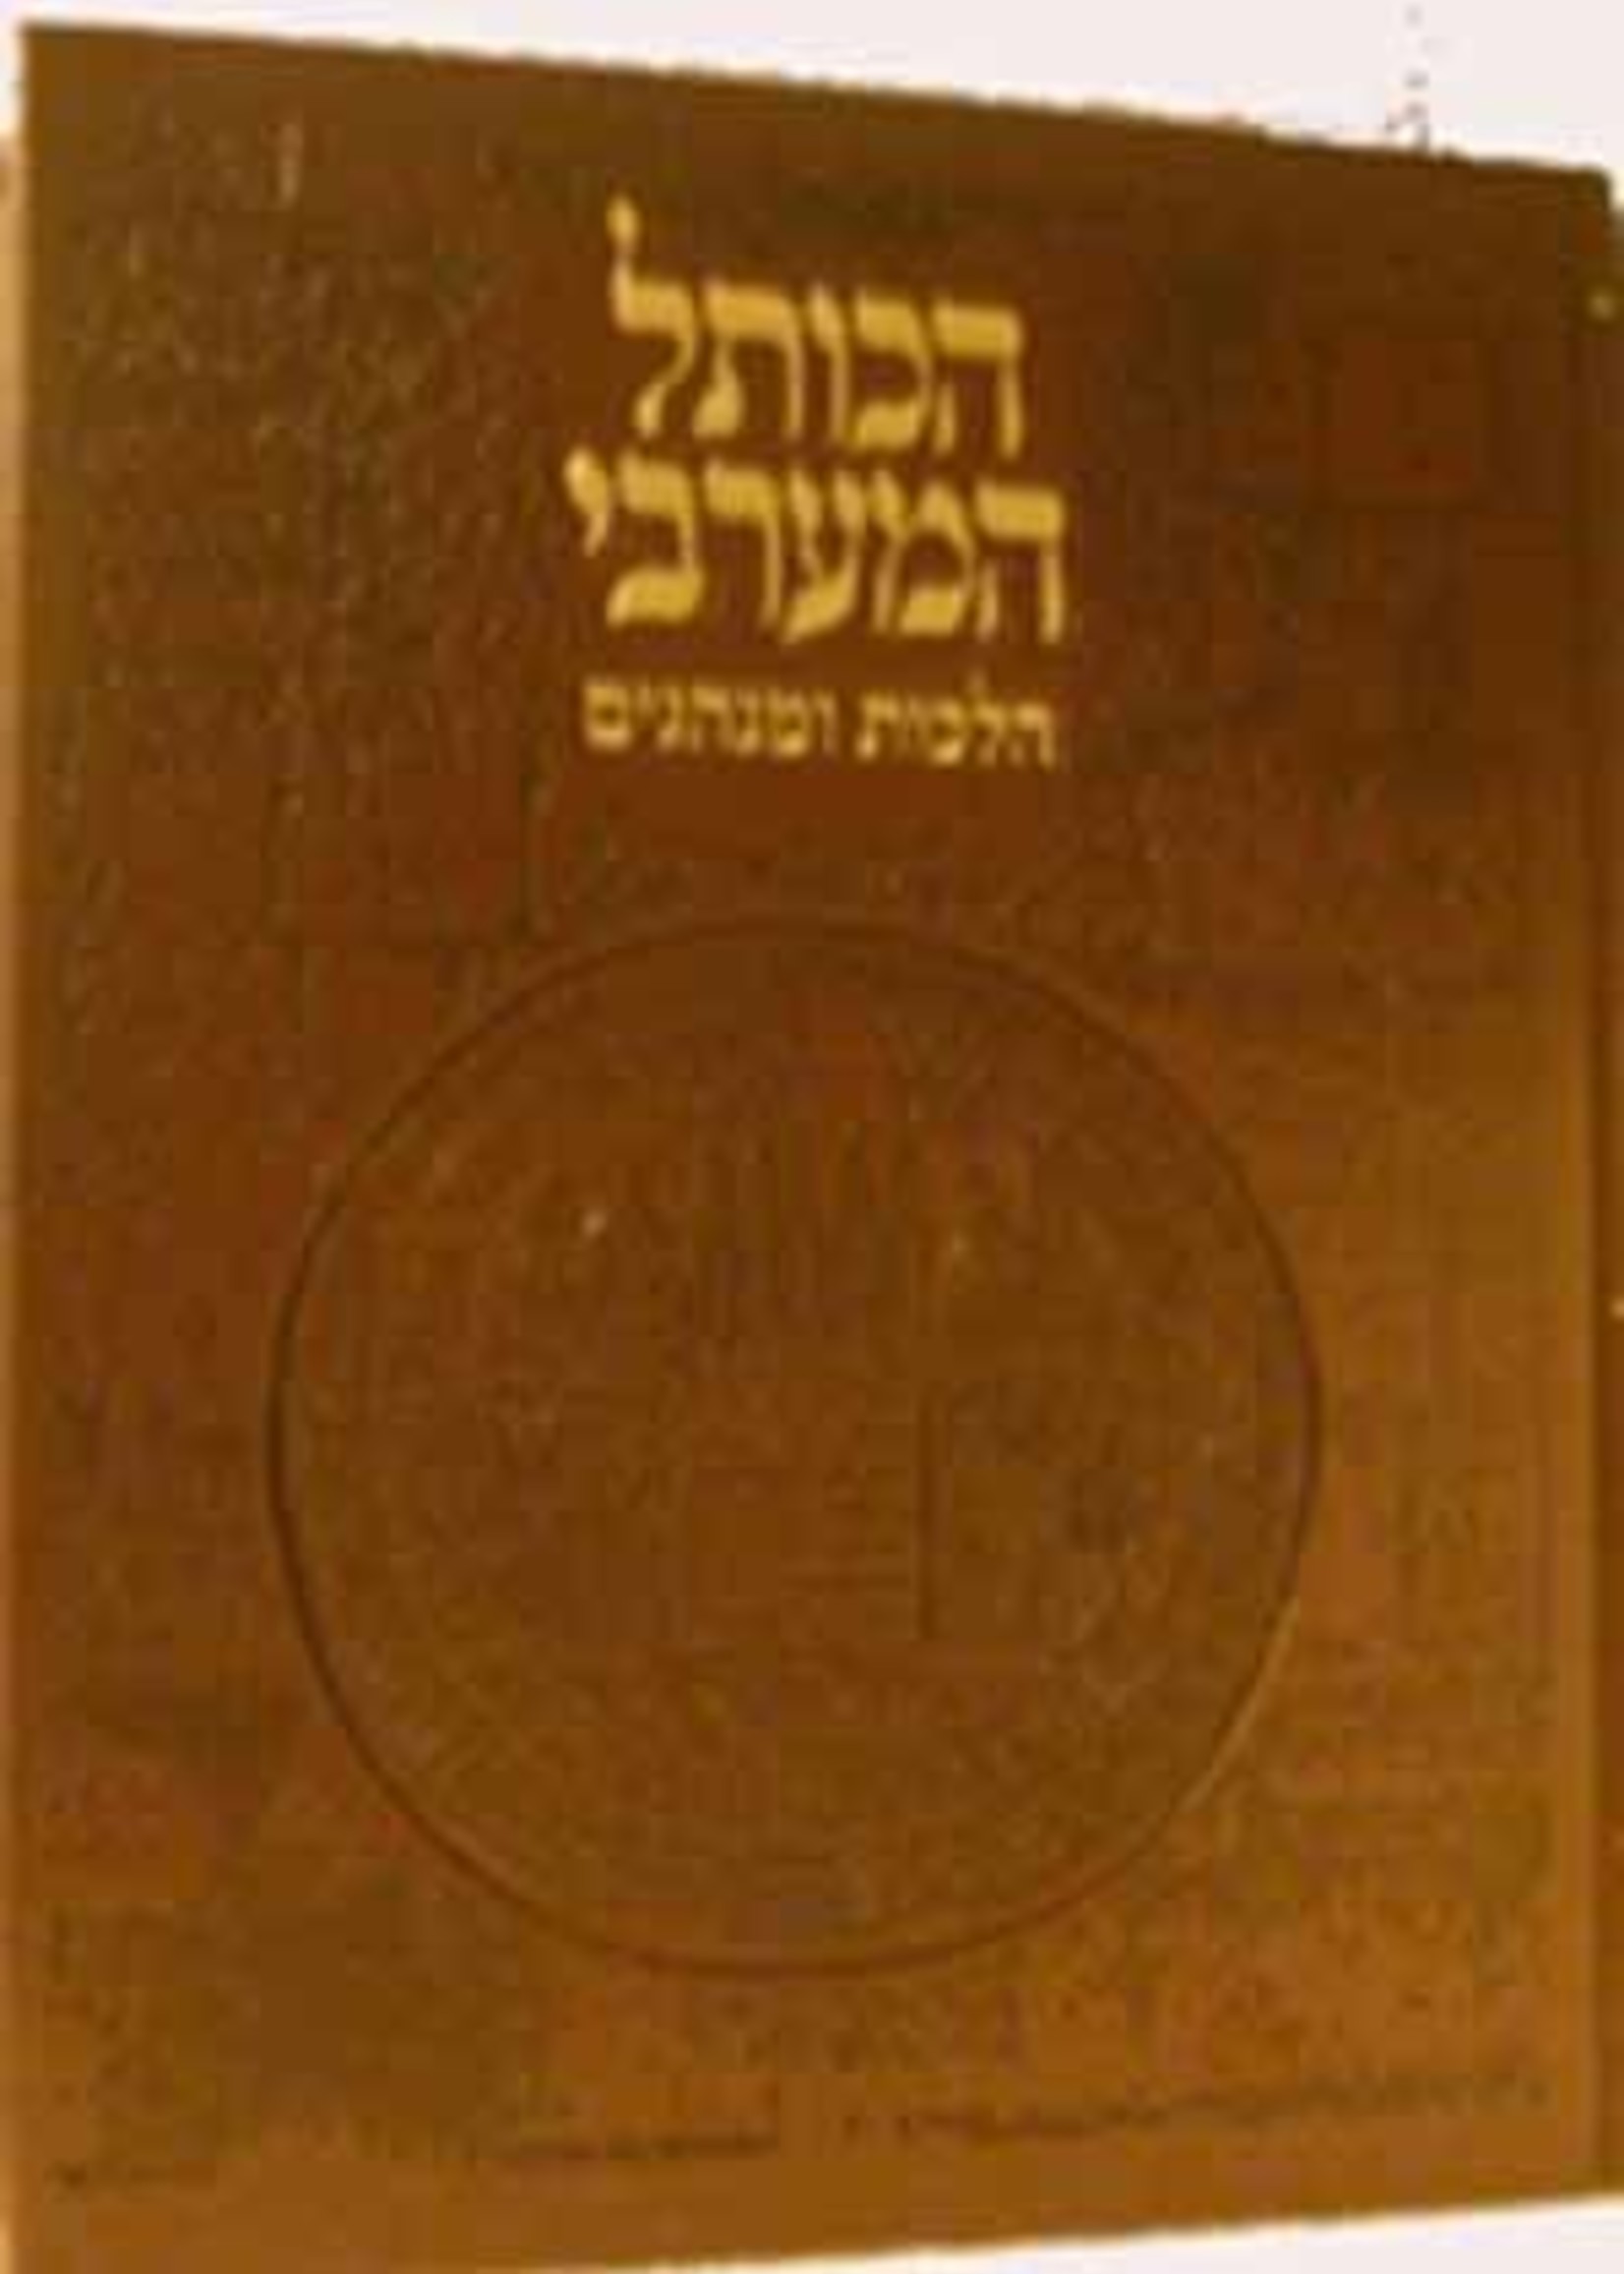 HaKotel HaMaaravi : Halachot ve'Minhagim/ הכותל המערבי הלכות ומנהגים